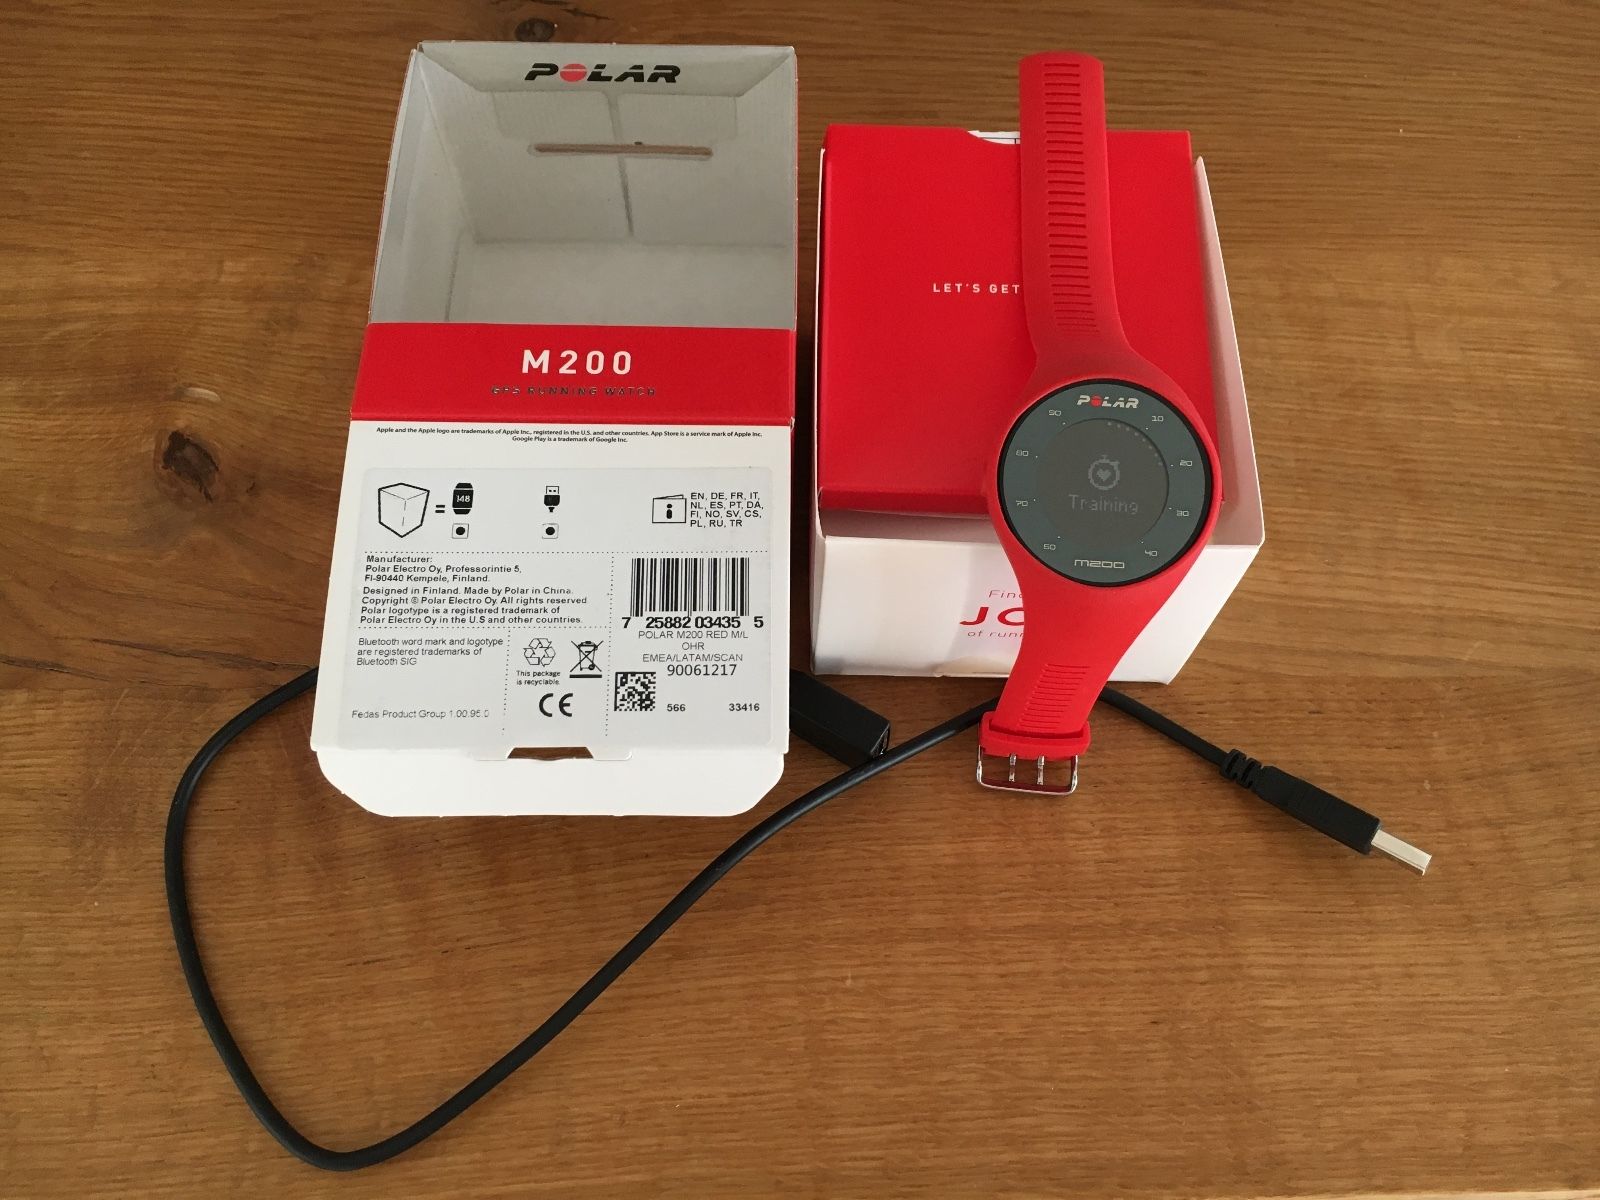 Polar Sportuhr M200 GPS-Pulsuhr, rot, Größe M/L unbenutzt, neuwertig!!